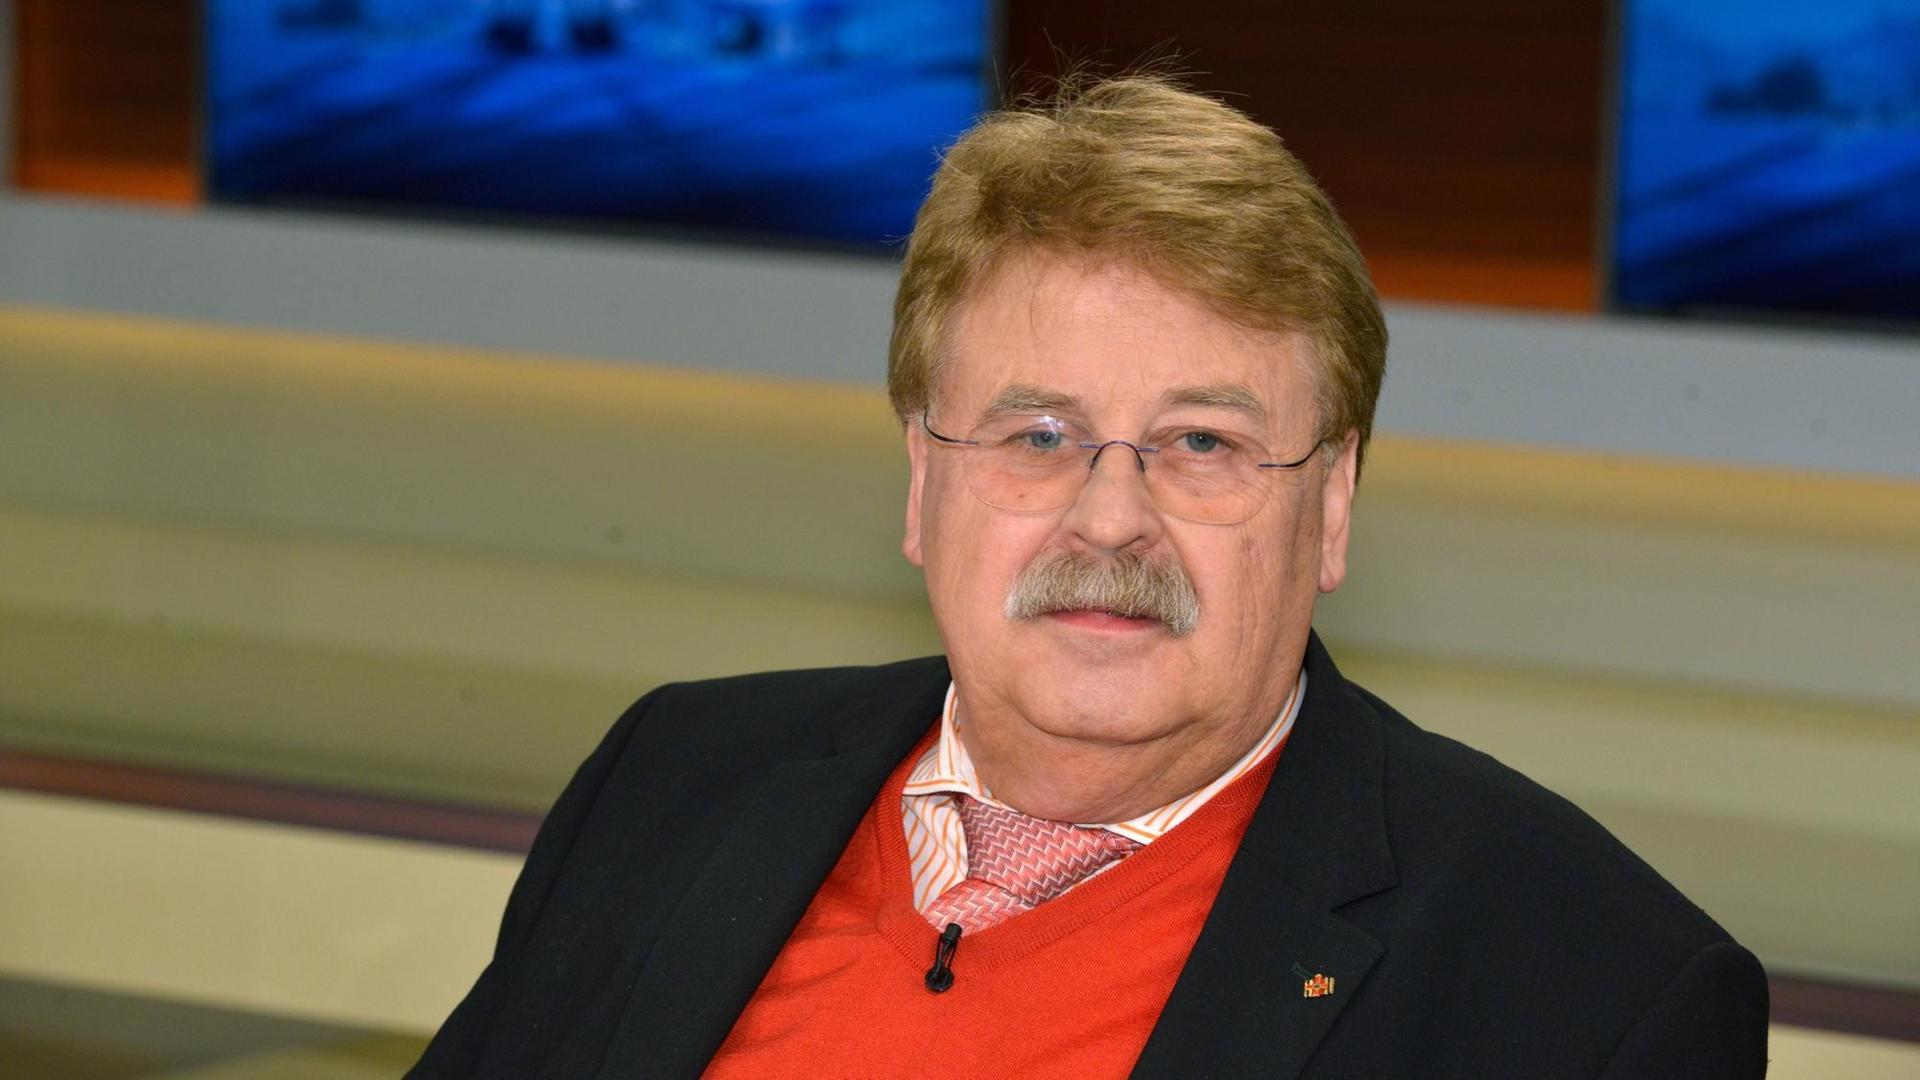 Elmar Brok, Vorsitzender des Auswärtigen Ausschusses des EU-Parlaments (CDU) bis 2017, aufgenommen am 10.04.2016 während der ARD-Talksendung "Anne Will".